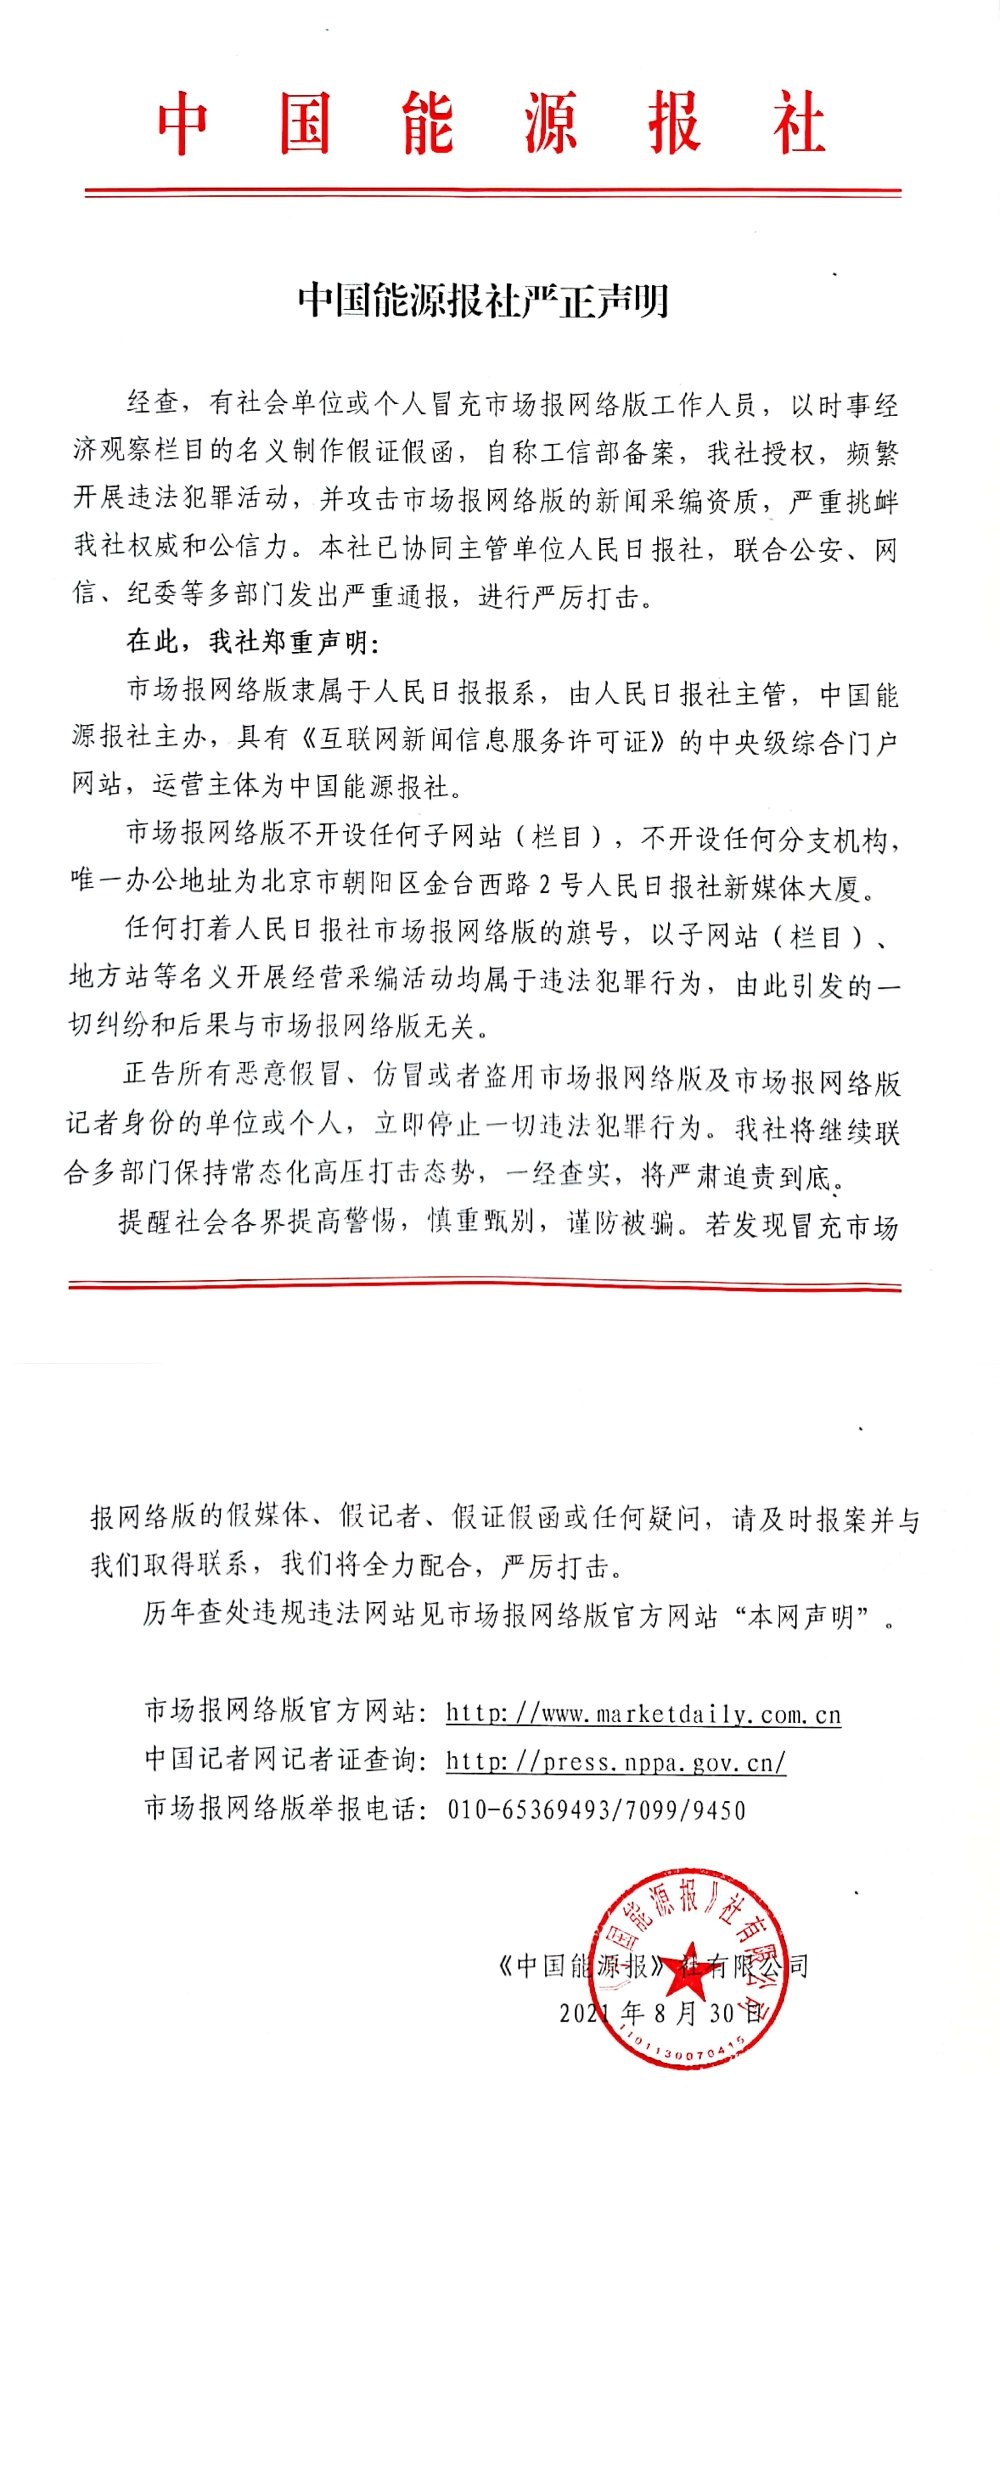 中国能源报社关于有冒充市场报网络版违法犯罪严正声明